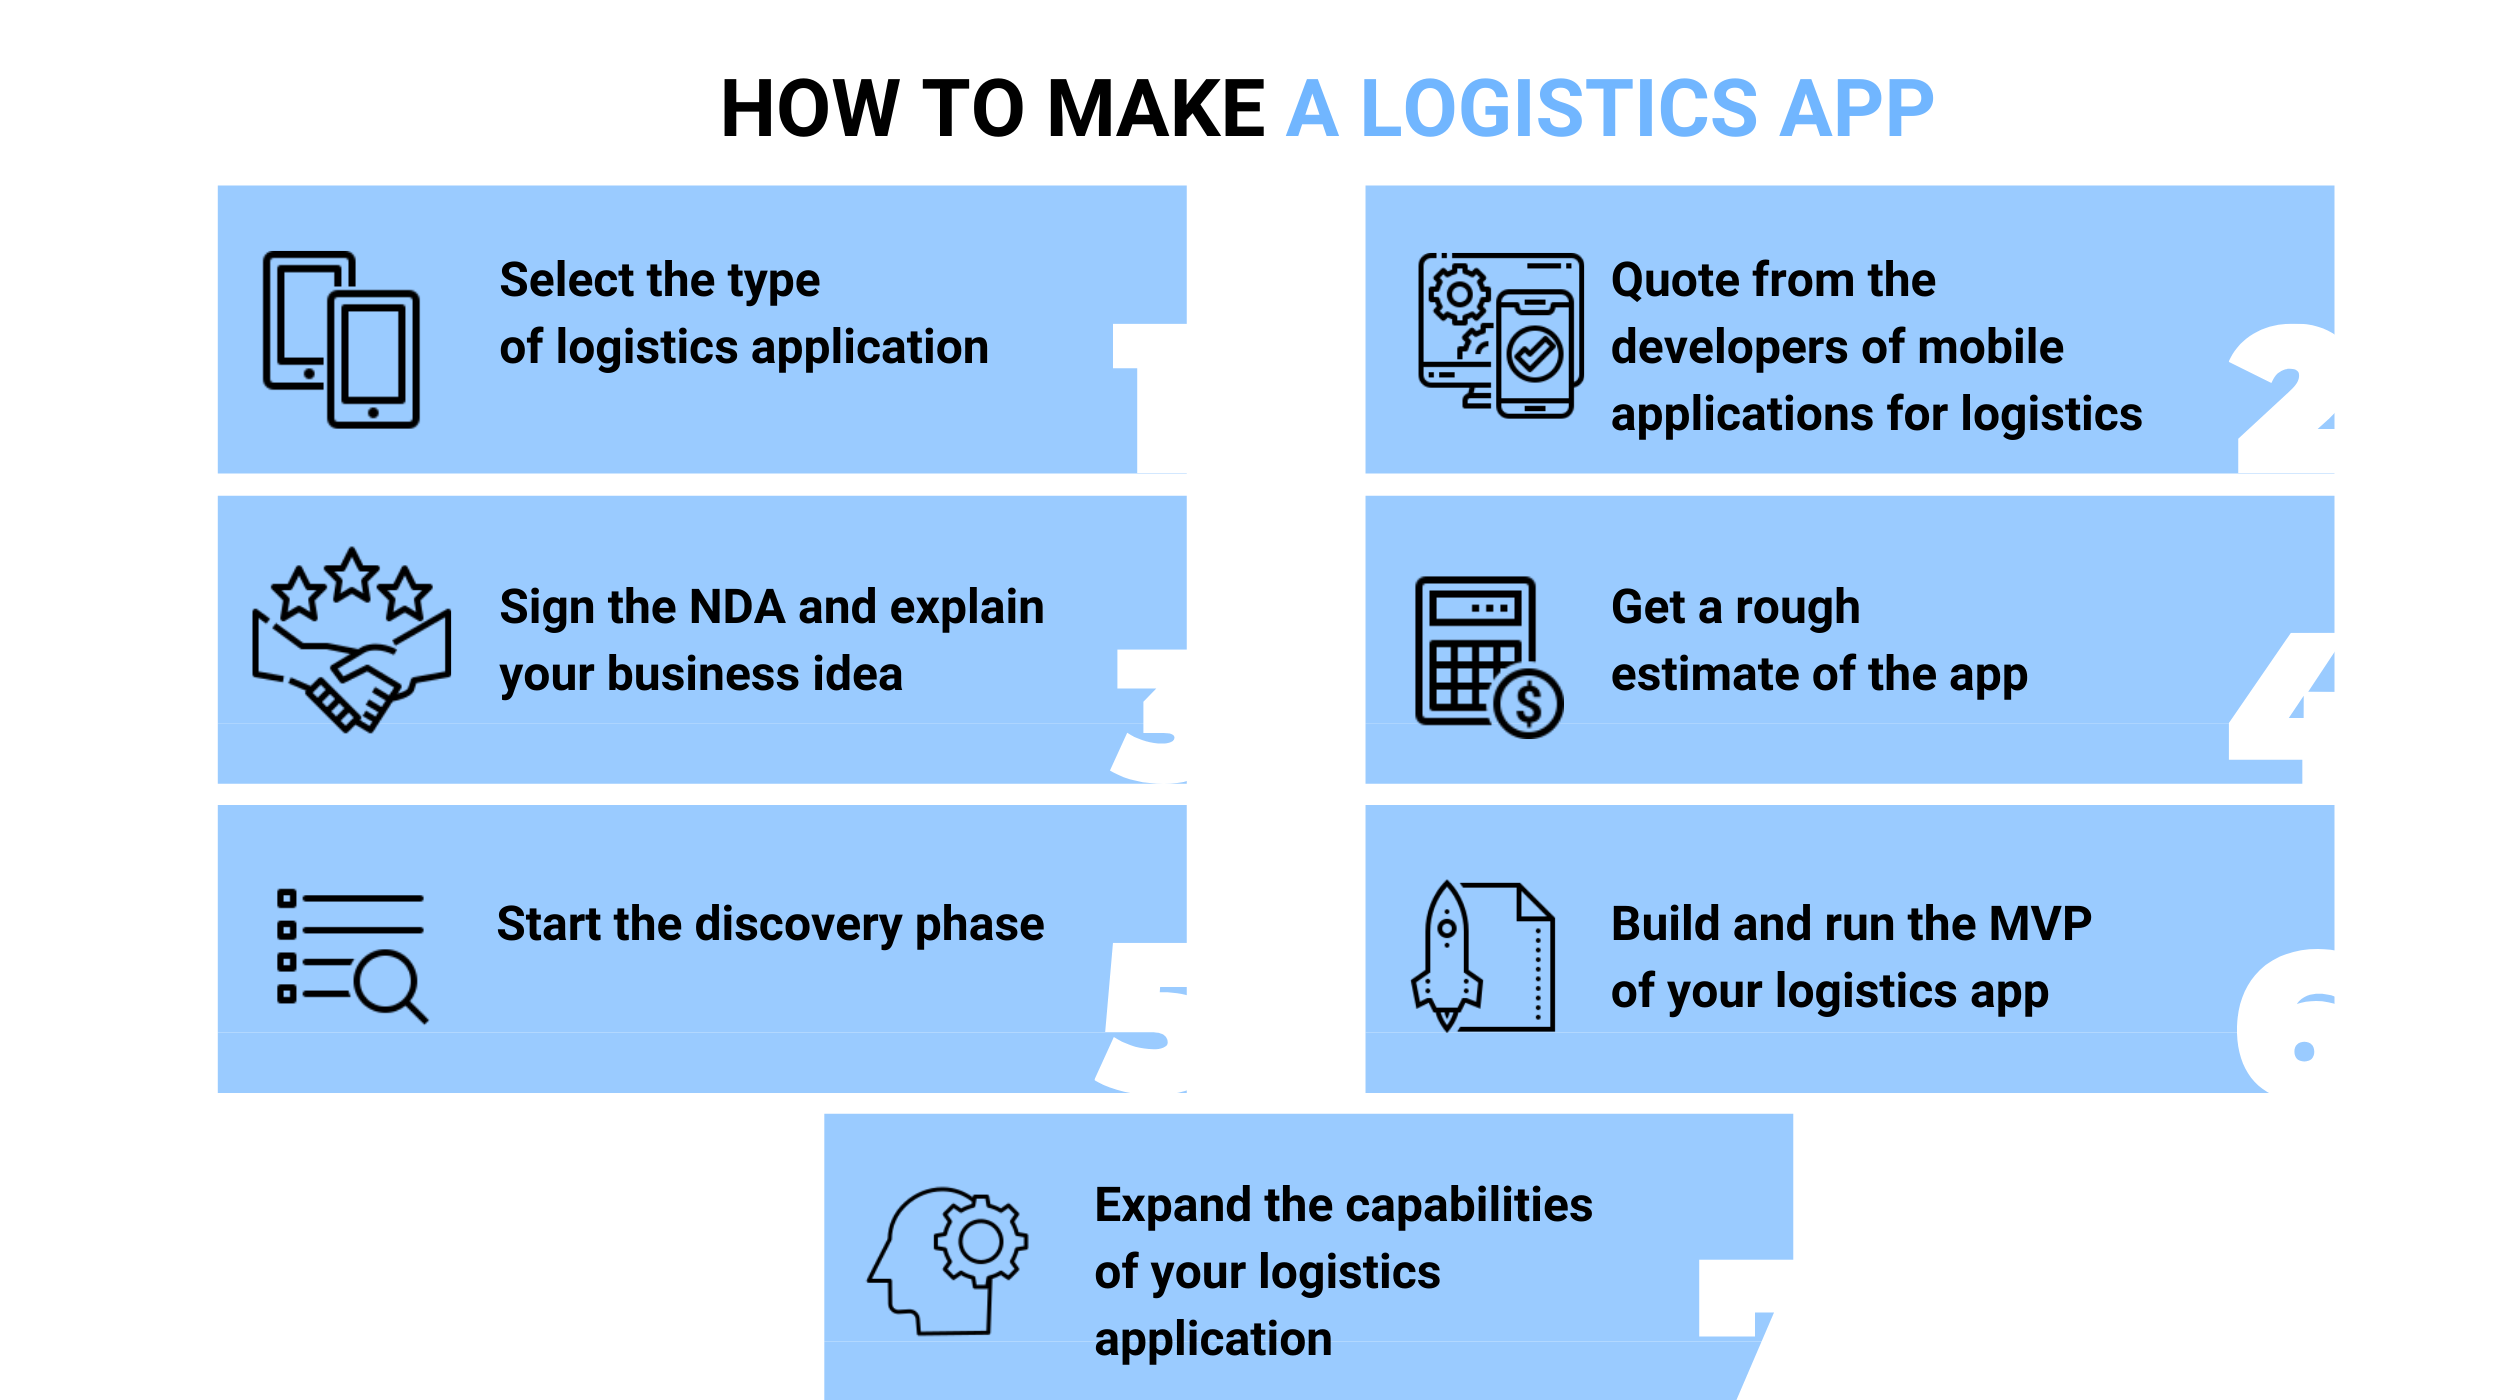 How to Make a Logistics App